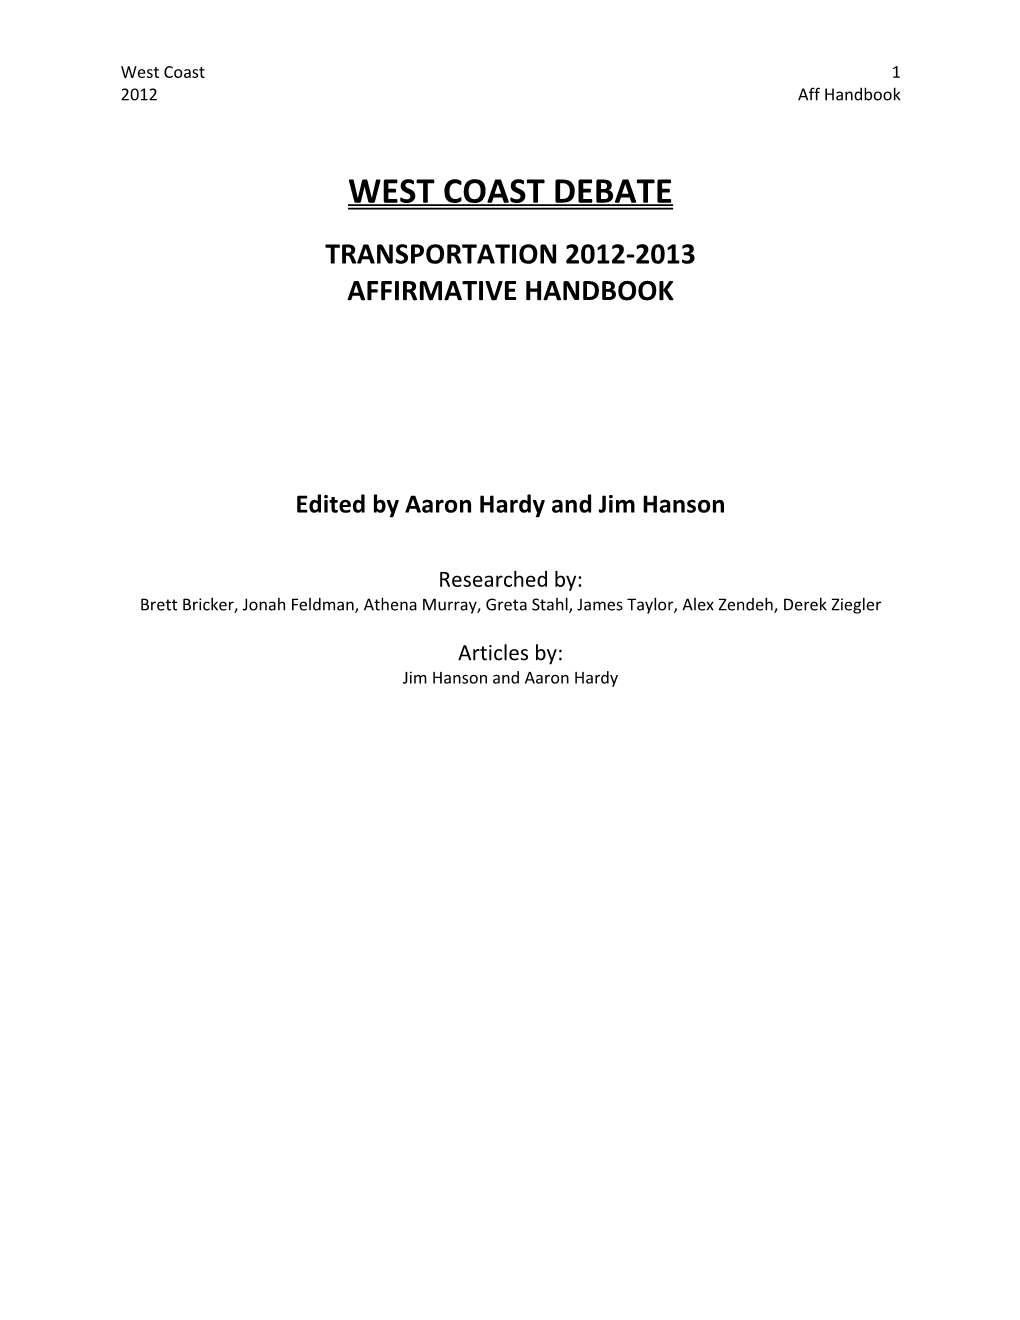 West Coast Debate